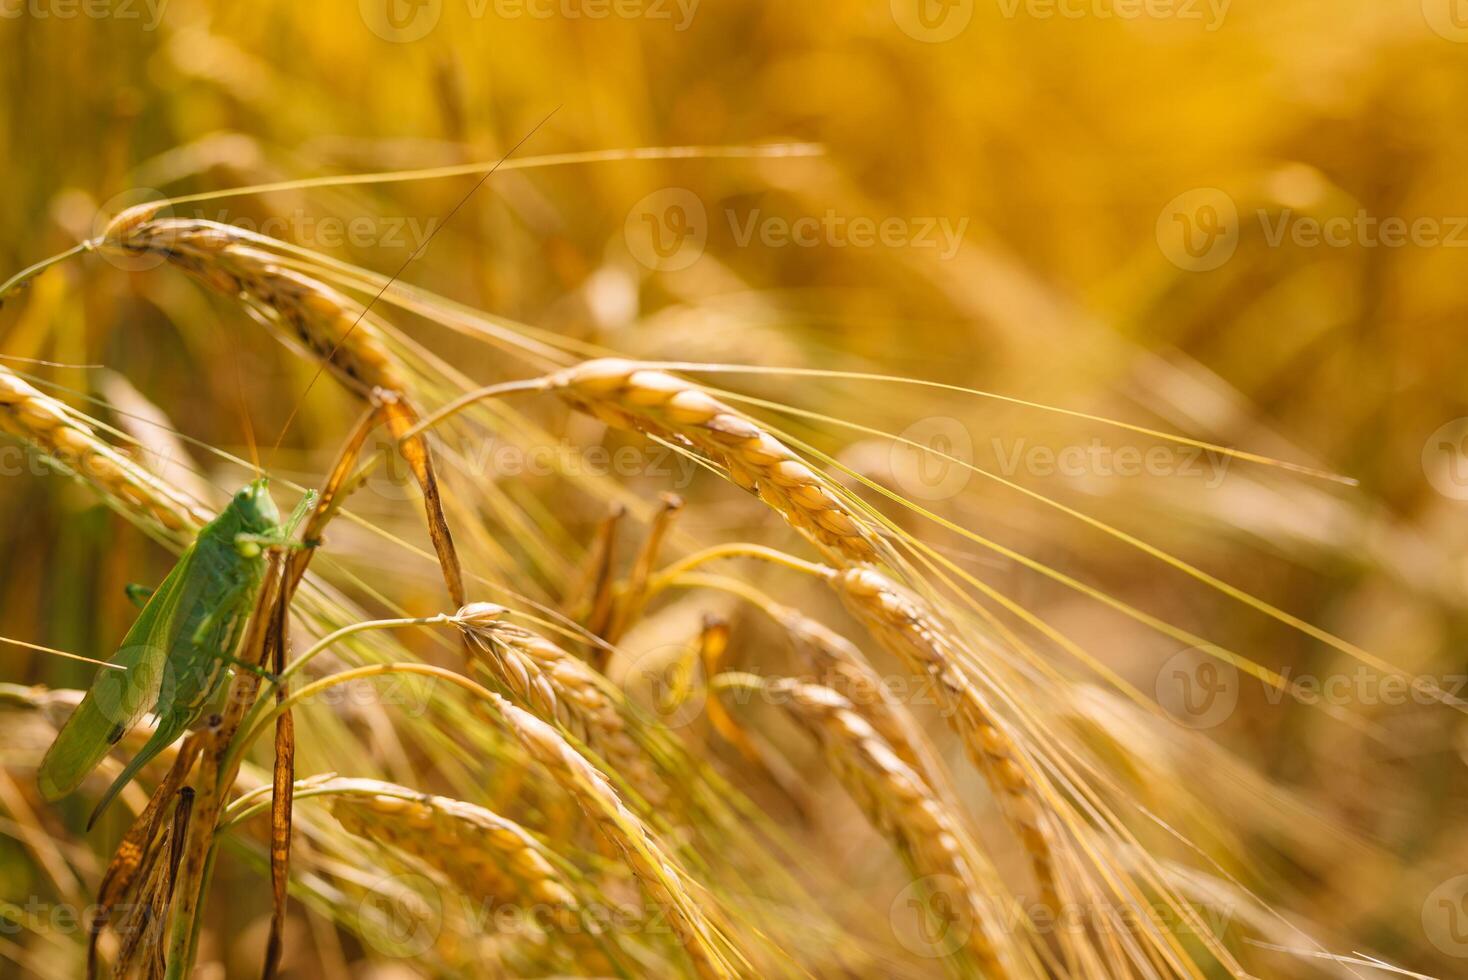 grön gräshoppor slukar en stor korn. insekt skadedjur. skadedjur begrepp i lantbruk. foto